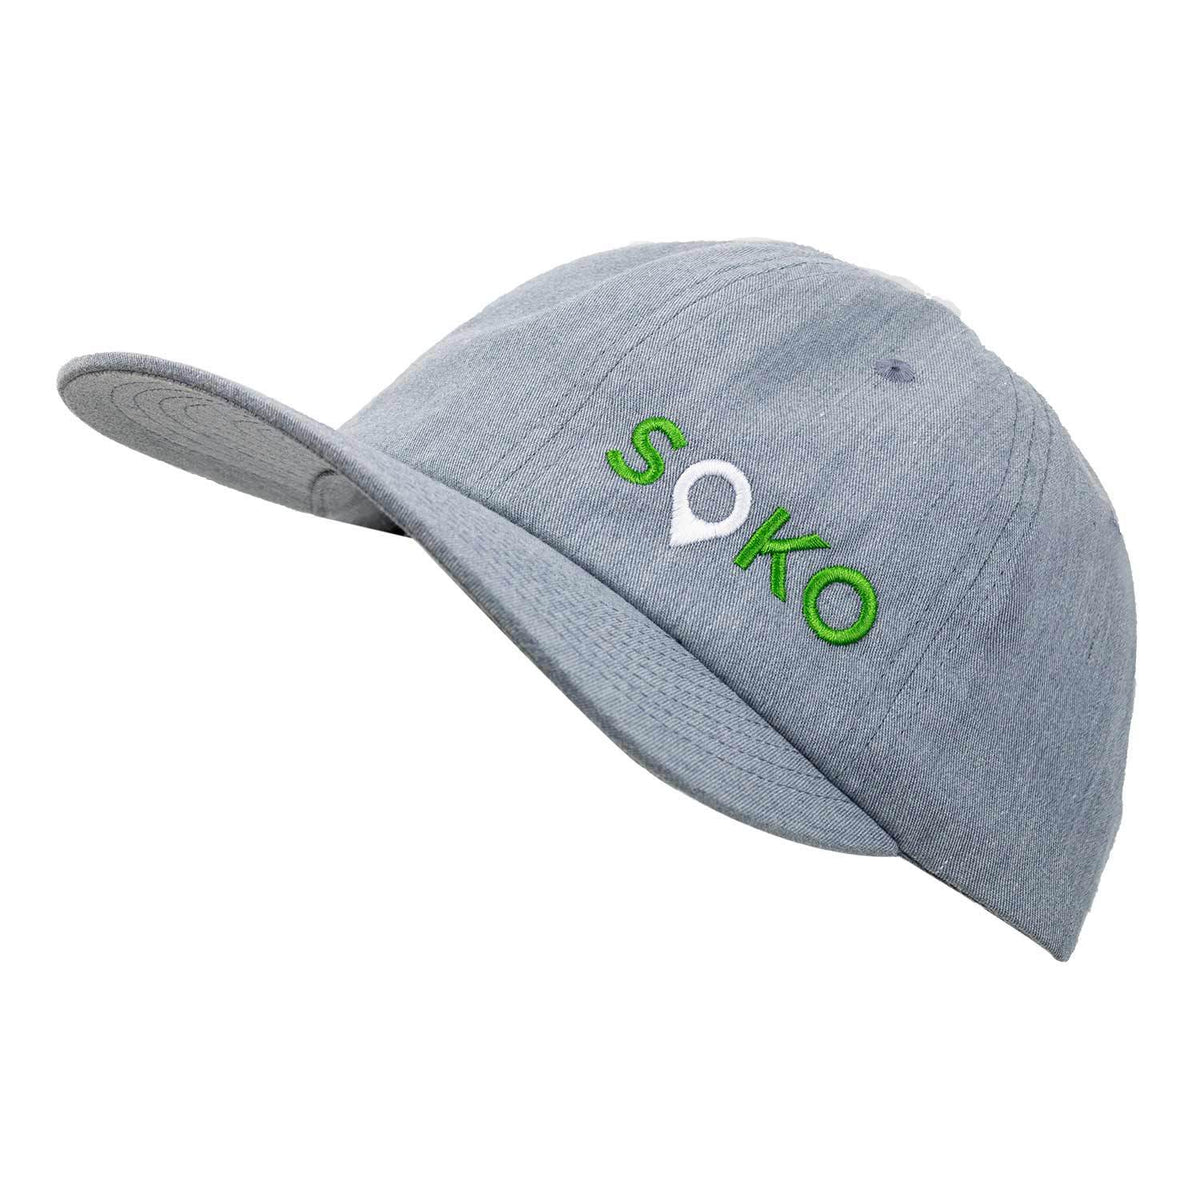 SOKO 252 Dad Hat